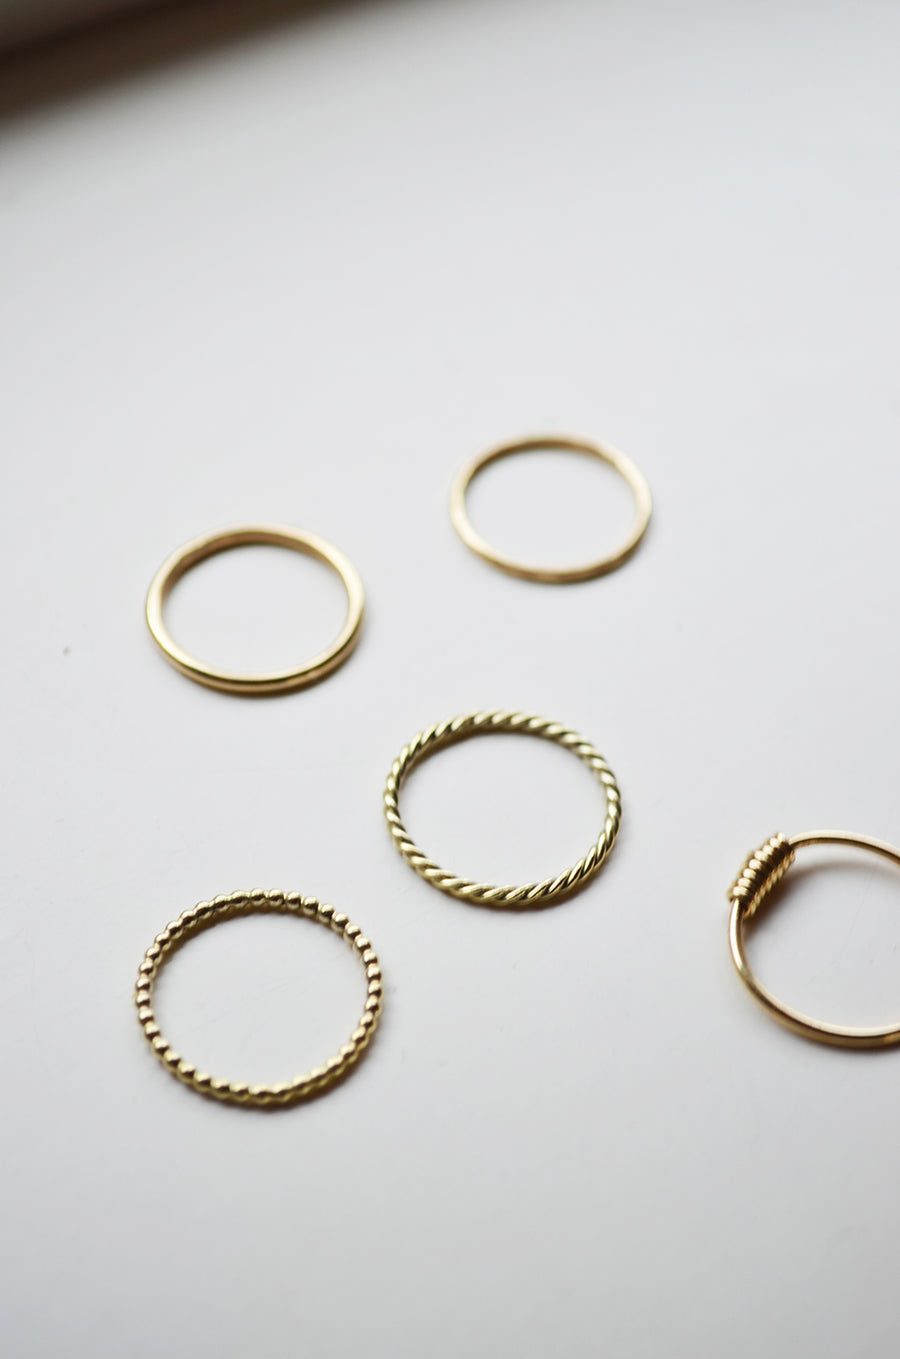 Plain Ring - Gold 14k